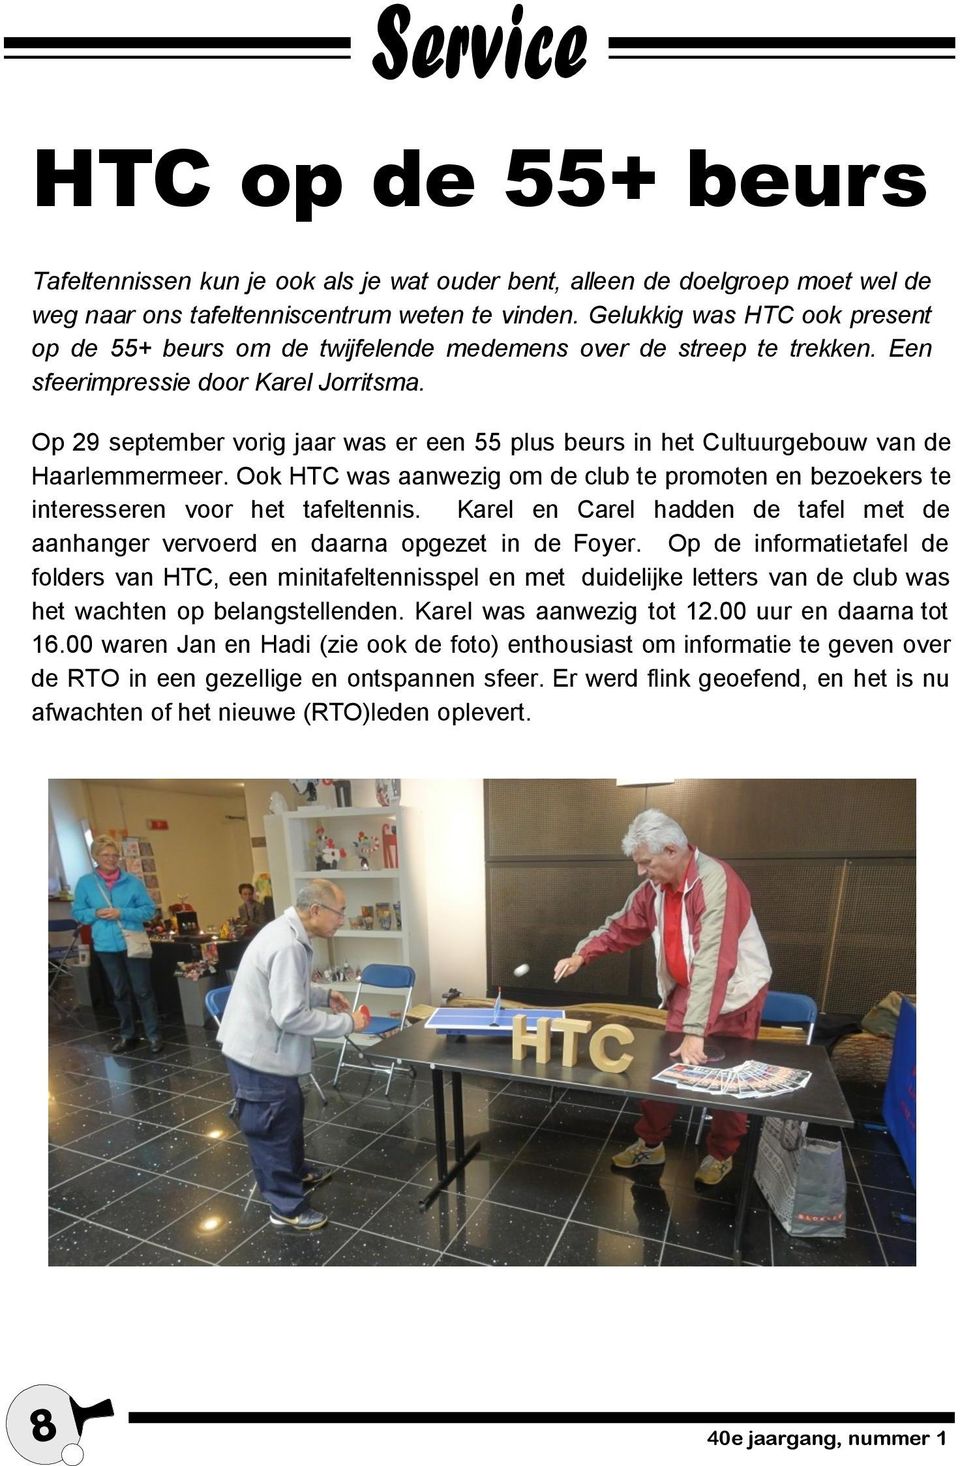 Op 29 september vorig jaar was er een 55 plus beurs in het Cultuurgebouw van de Haarlemmermeer. Ook HTC was aanwezig om de club te promoten en bezoekers te interesseren voor het tafeltennis.